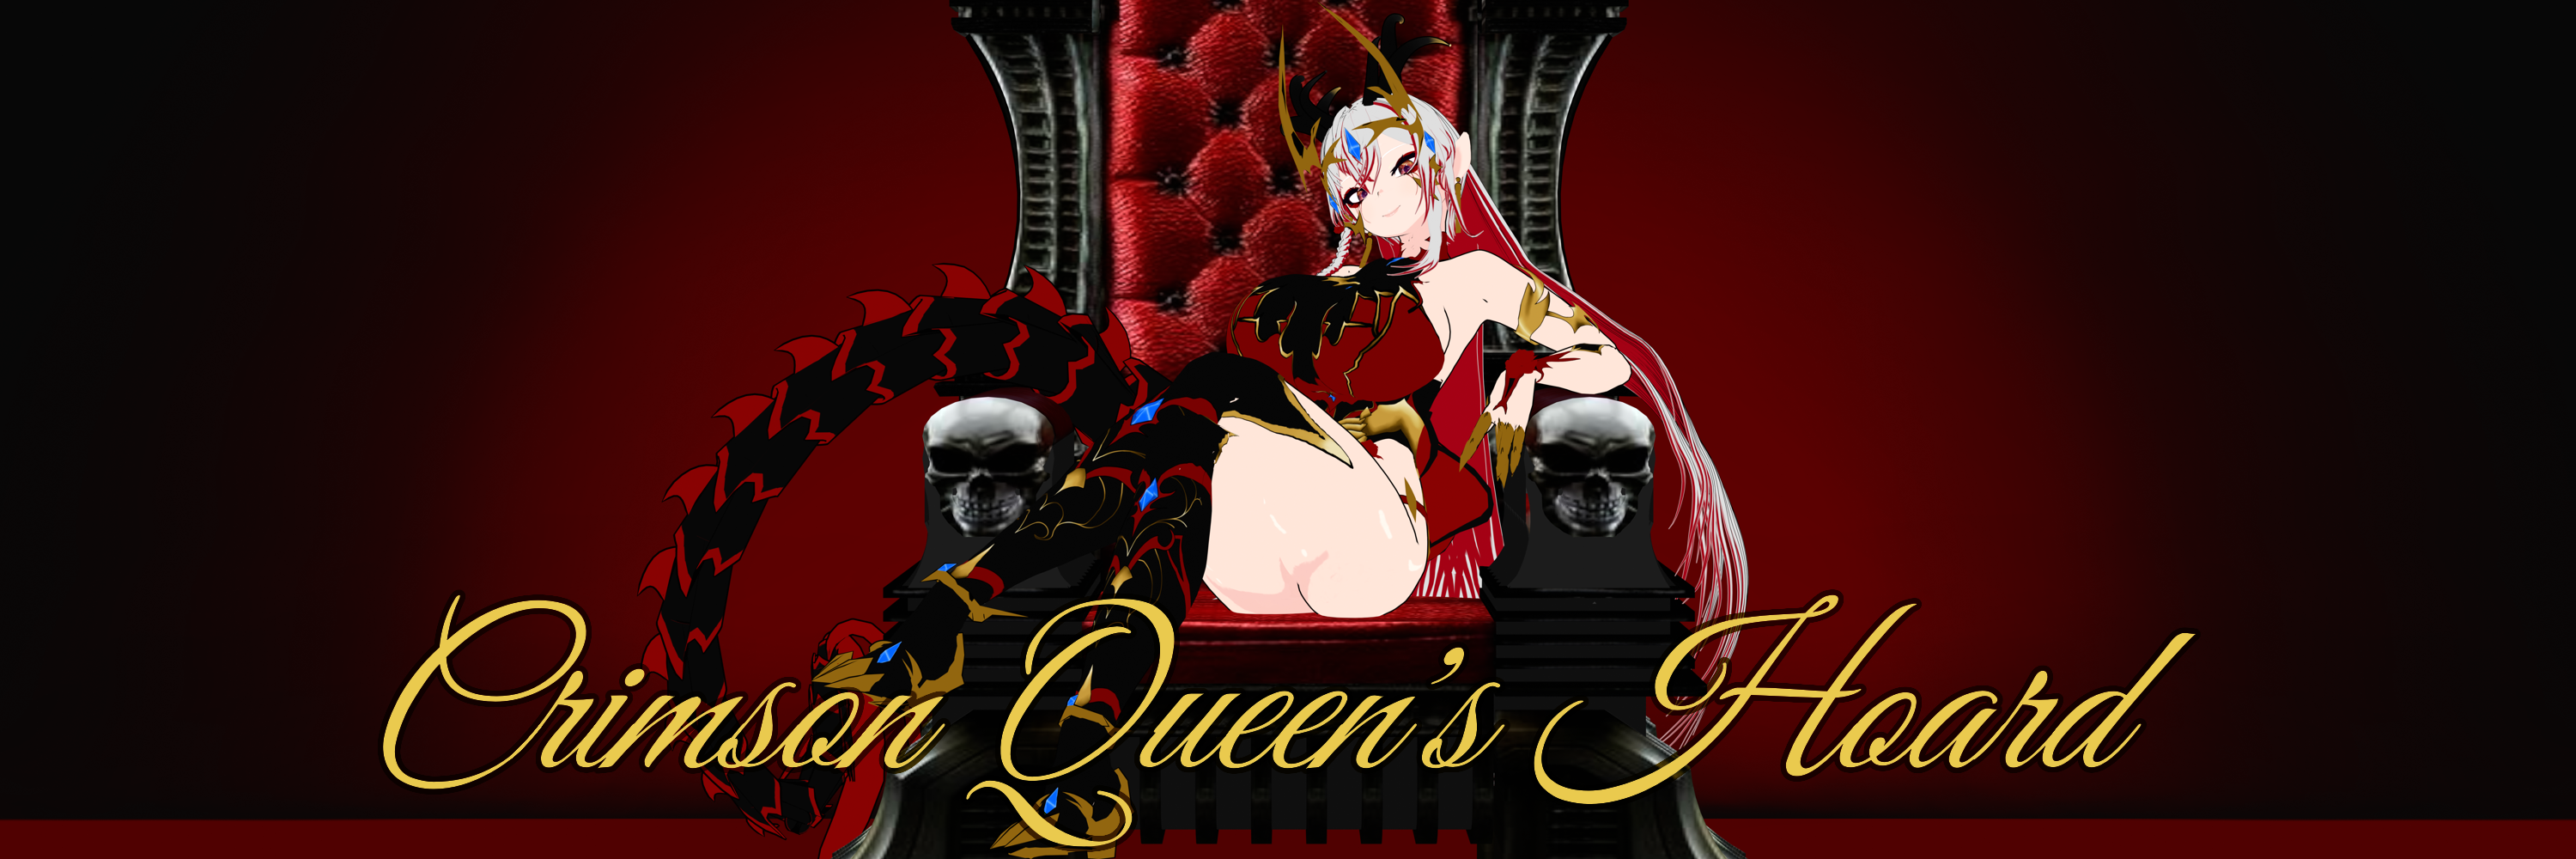 Crimson Queen's Hoard